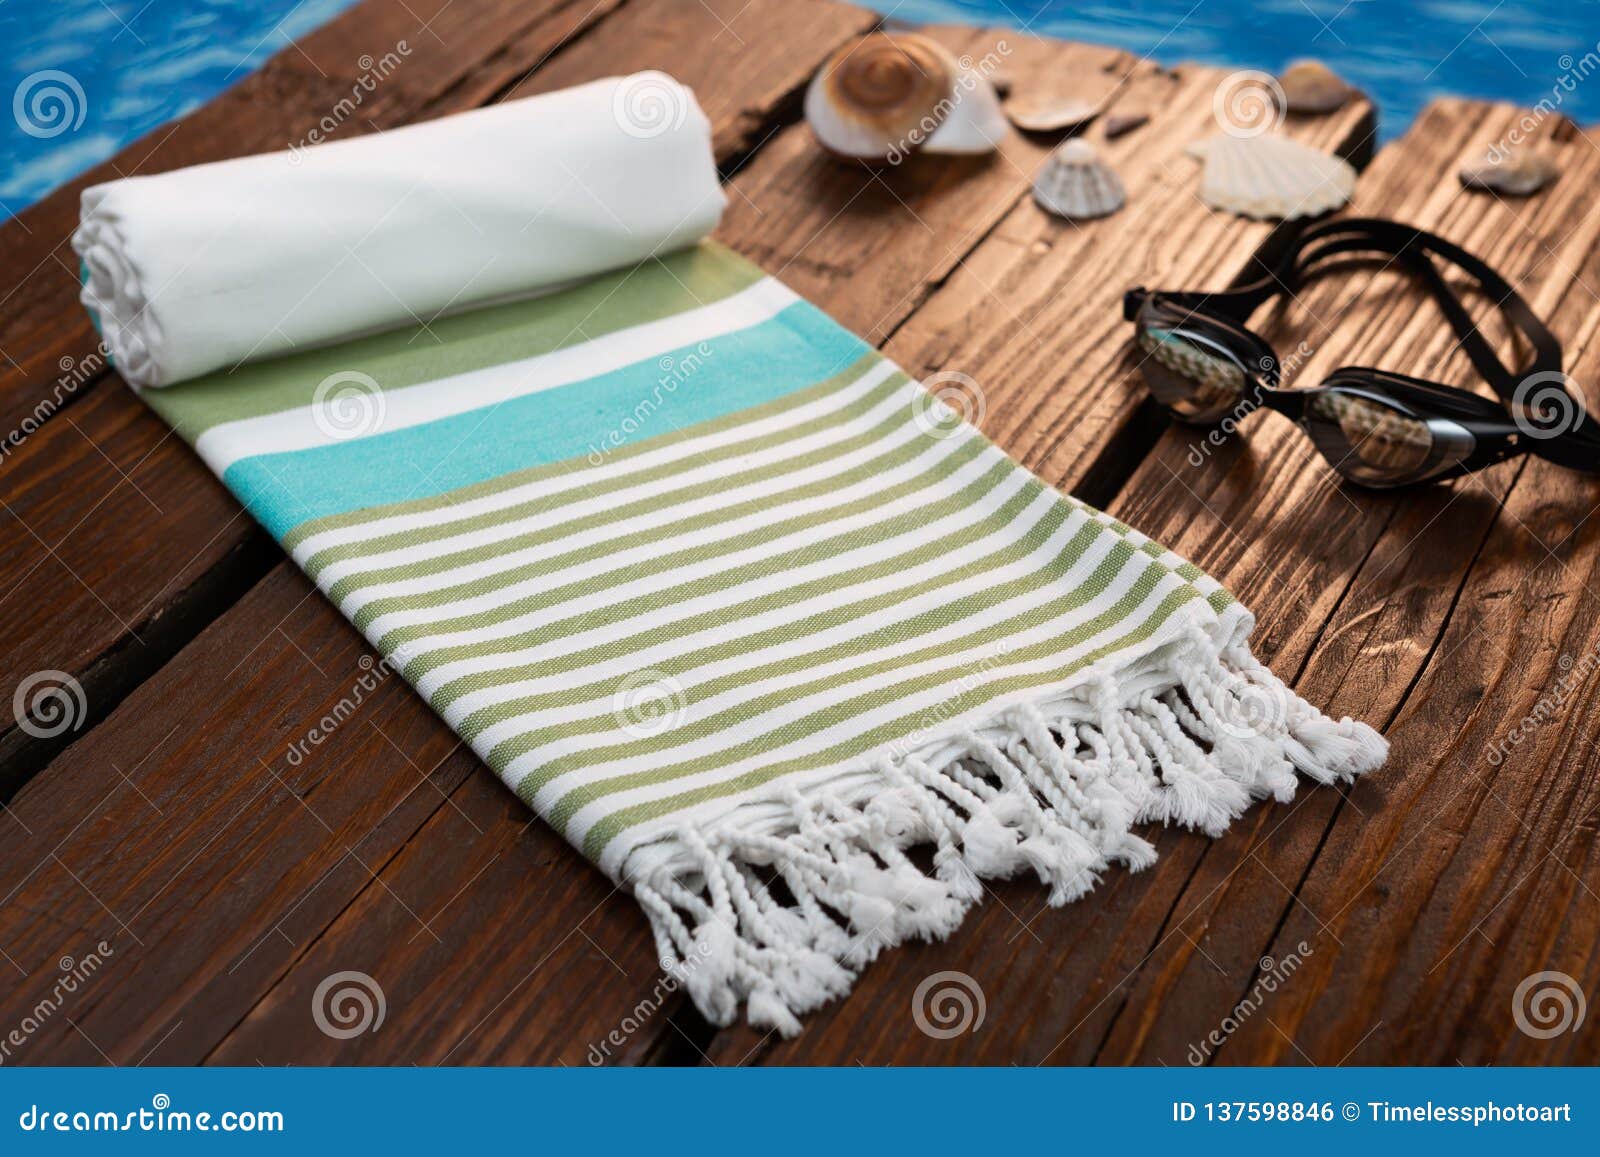 handwoven blue hammam turkish cotton towel on dark wooden bridge